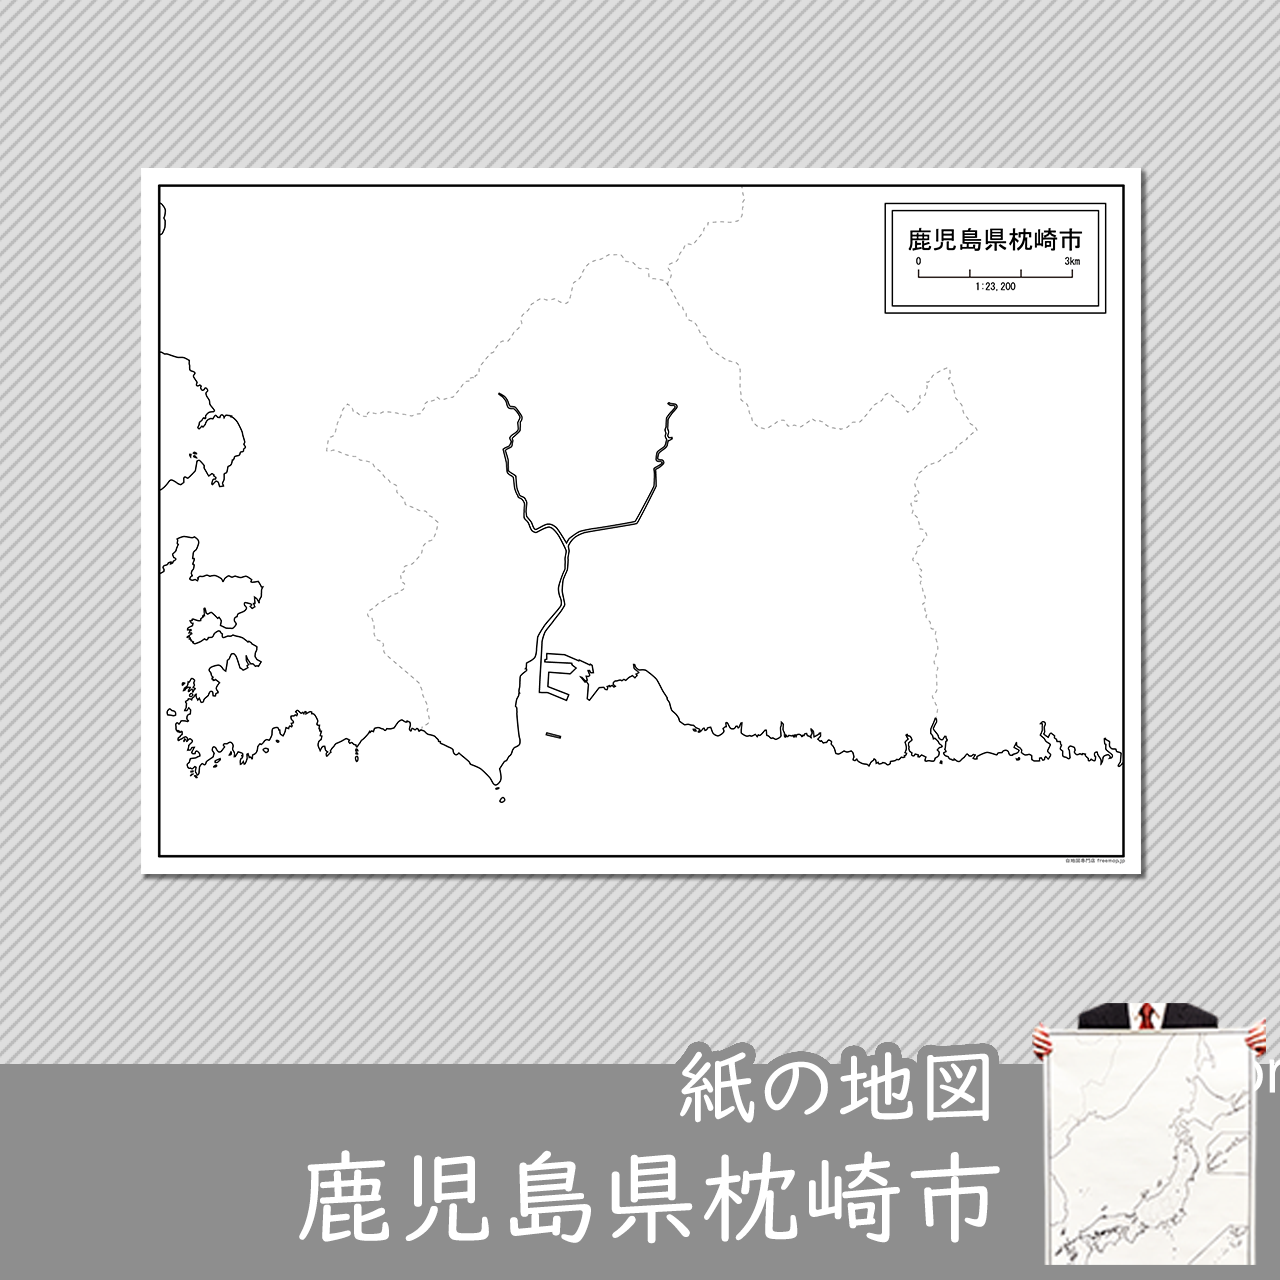 枕崎市の紙の白地図のサムネイル